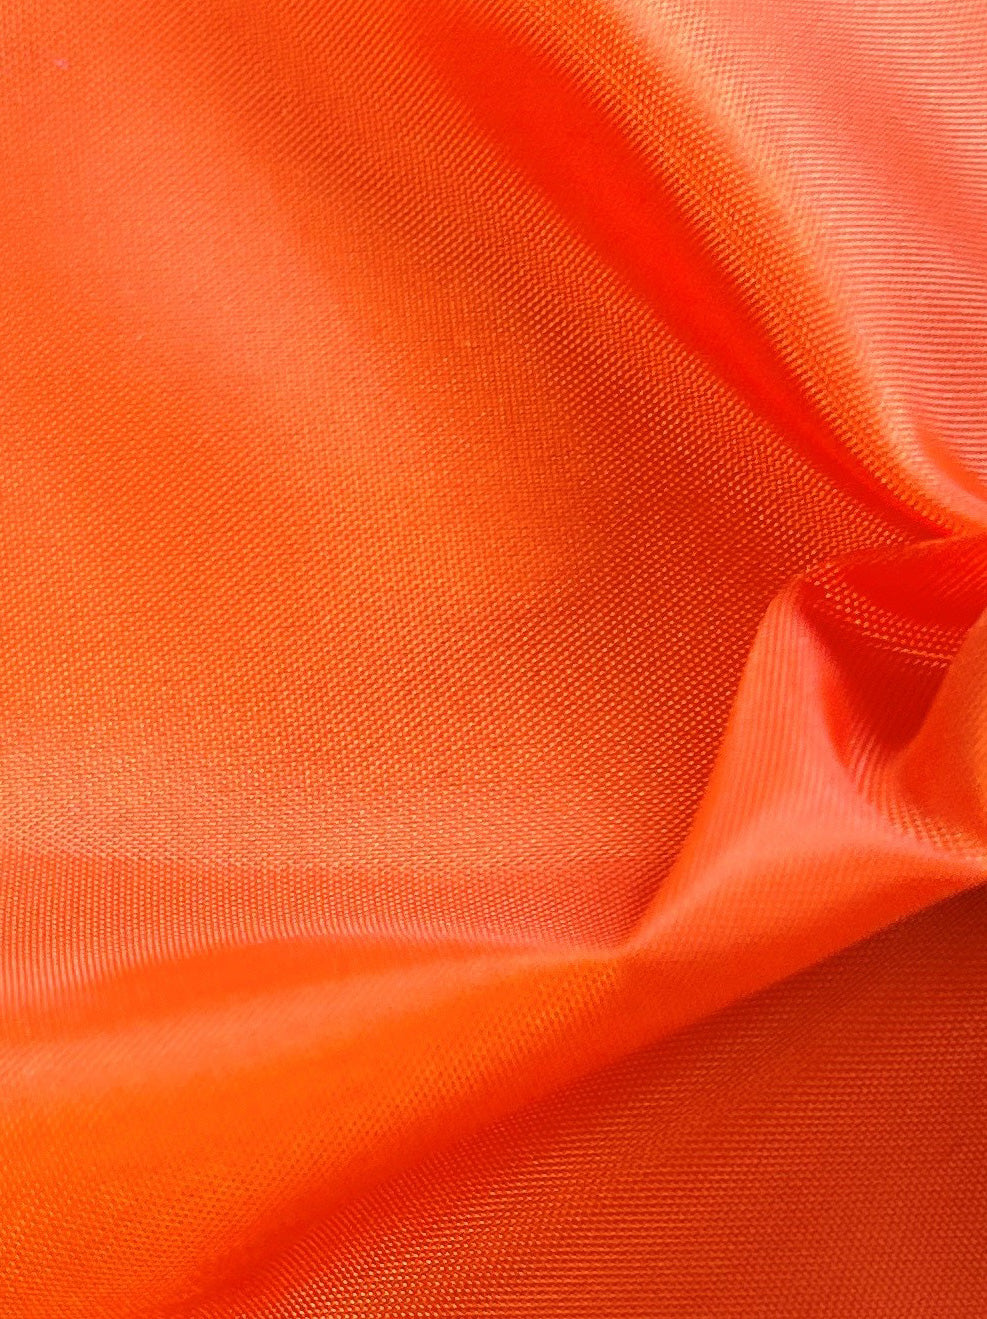 Tissu Doublure Polyester Orange - Eclipse